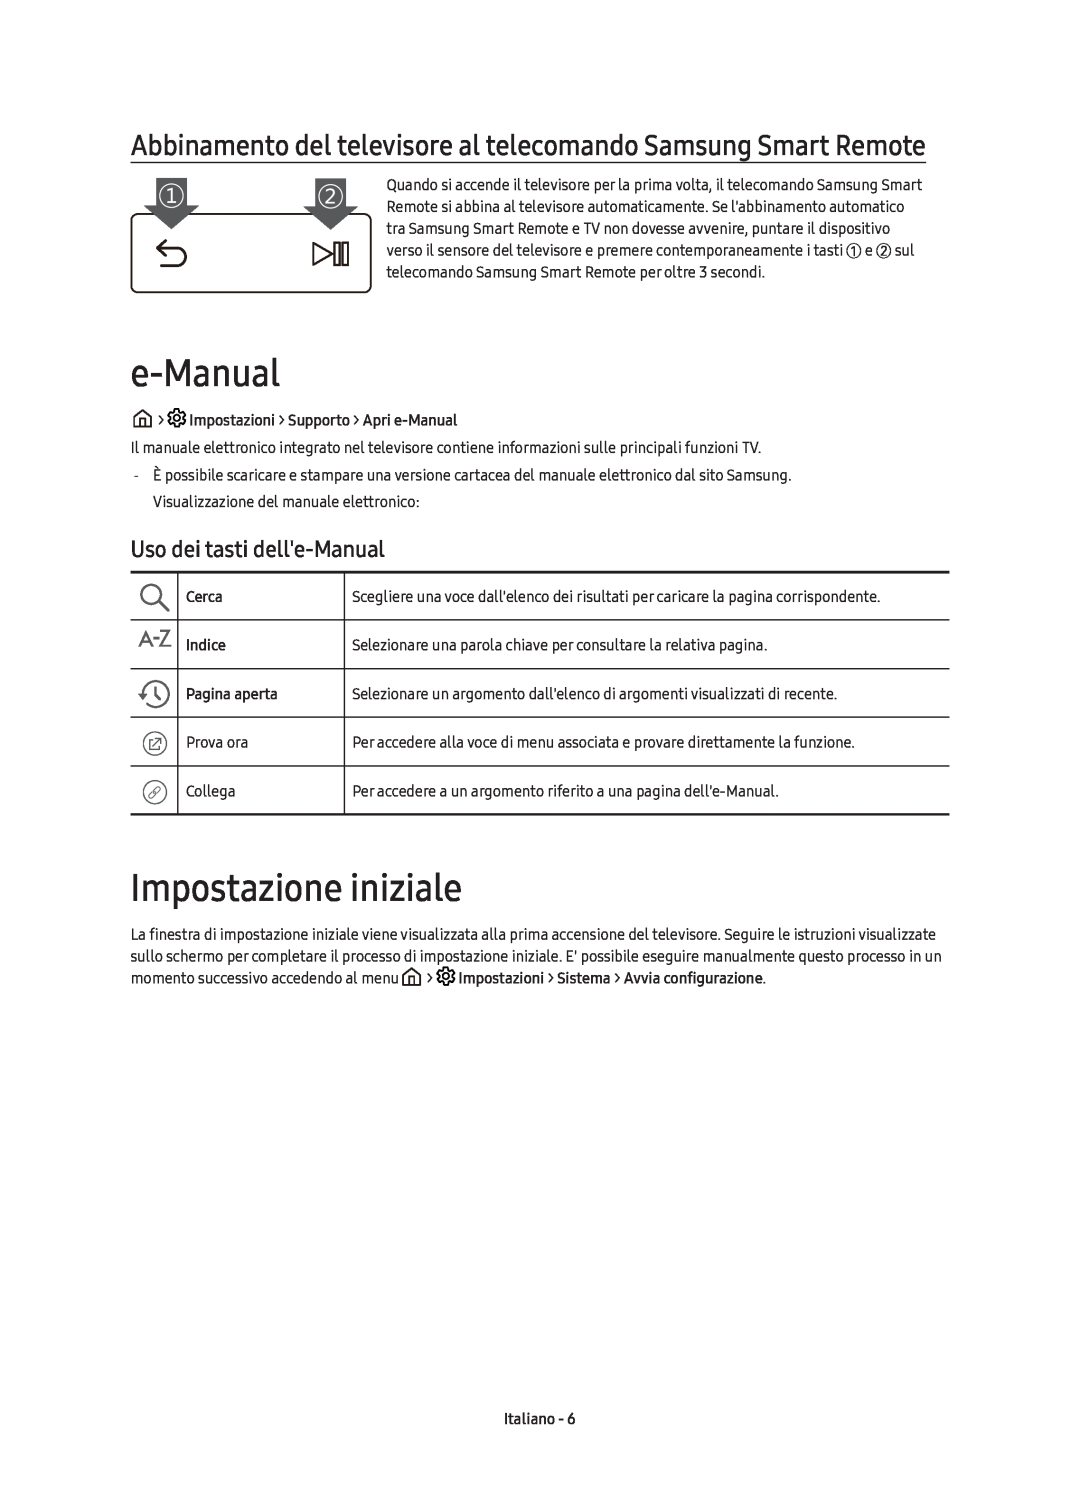 Samsung UE43KS7590UXZG manual Impostazione iniziale, Uso dei tasti delle-Manual, Impostazioni Supporto Apri e-Manual, Cerca 